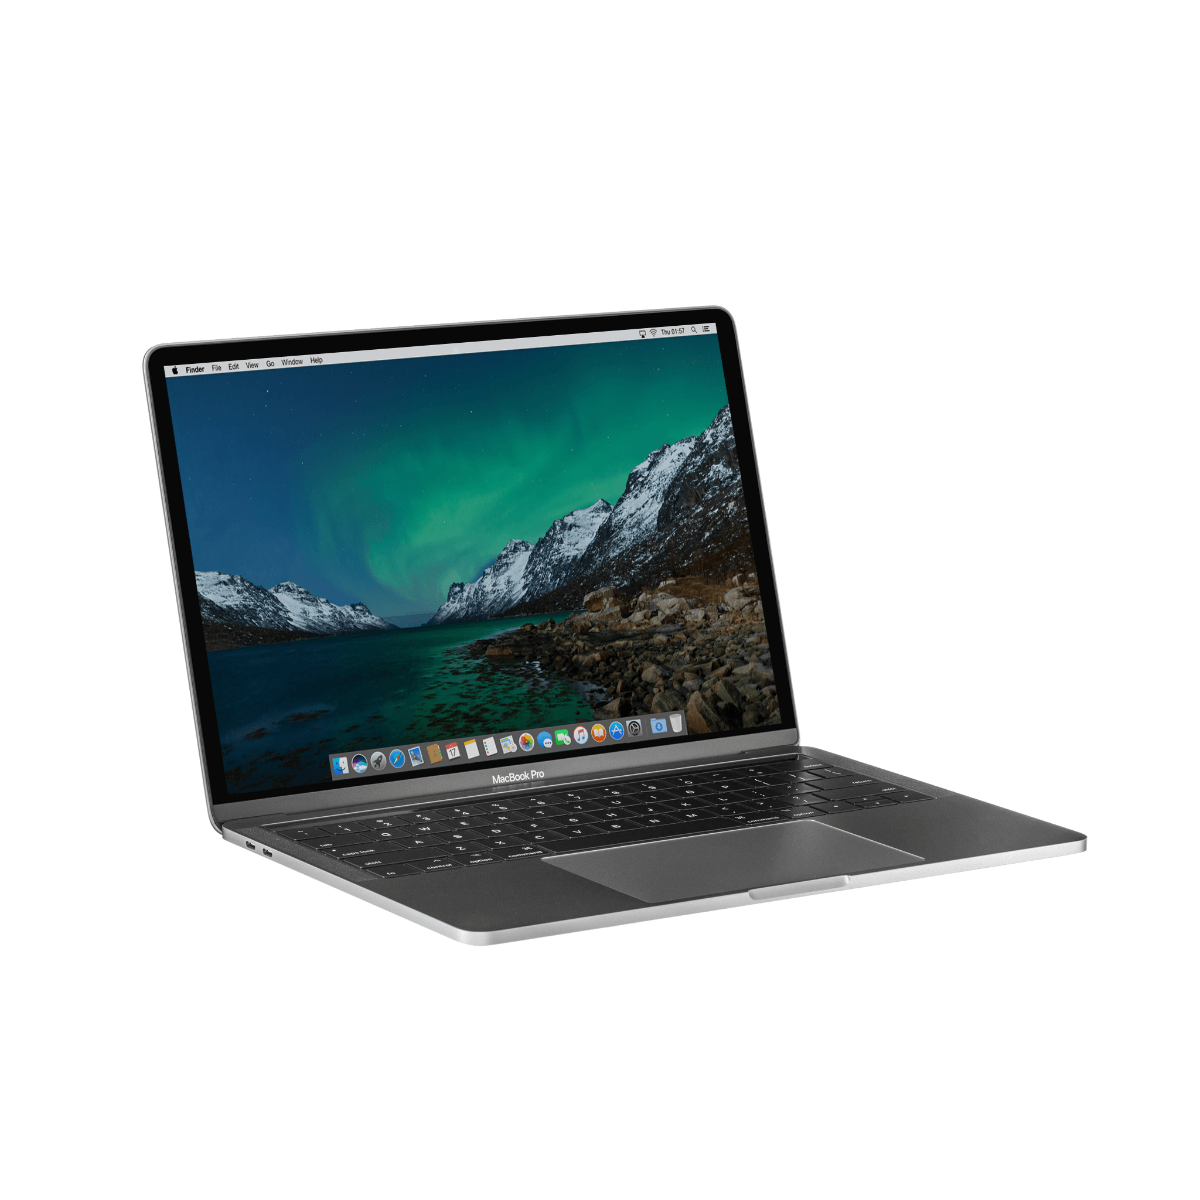 Refurbished MacBook Pro Touchbar 13" i7 3.3 Ghz 16GB 256GB Spacegrijs - test-product-media-liquid1